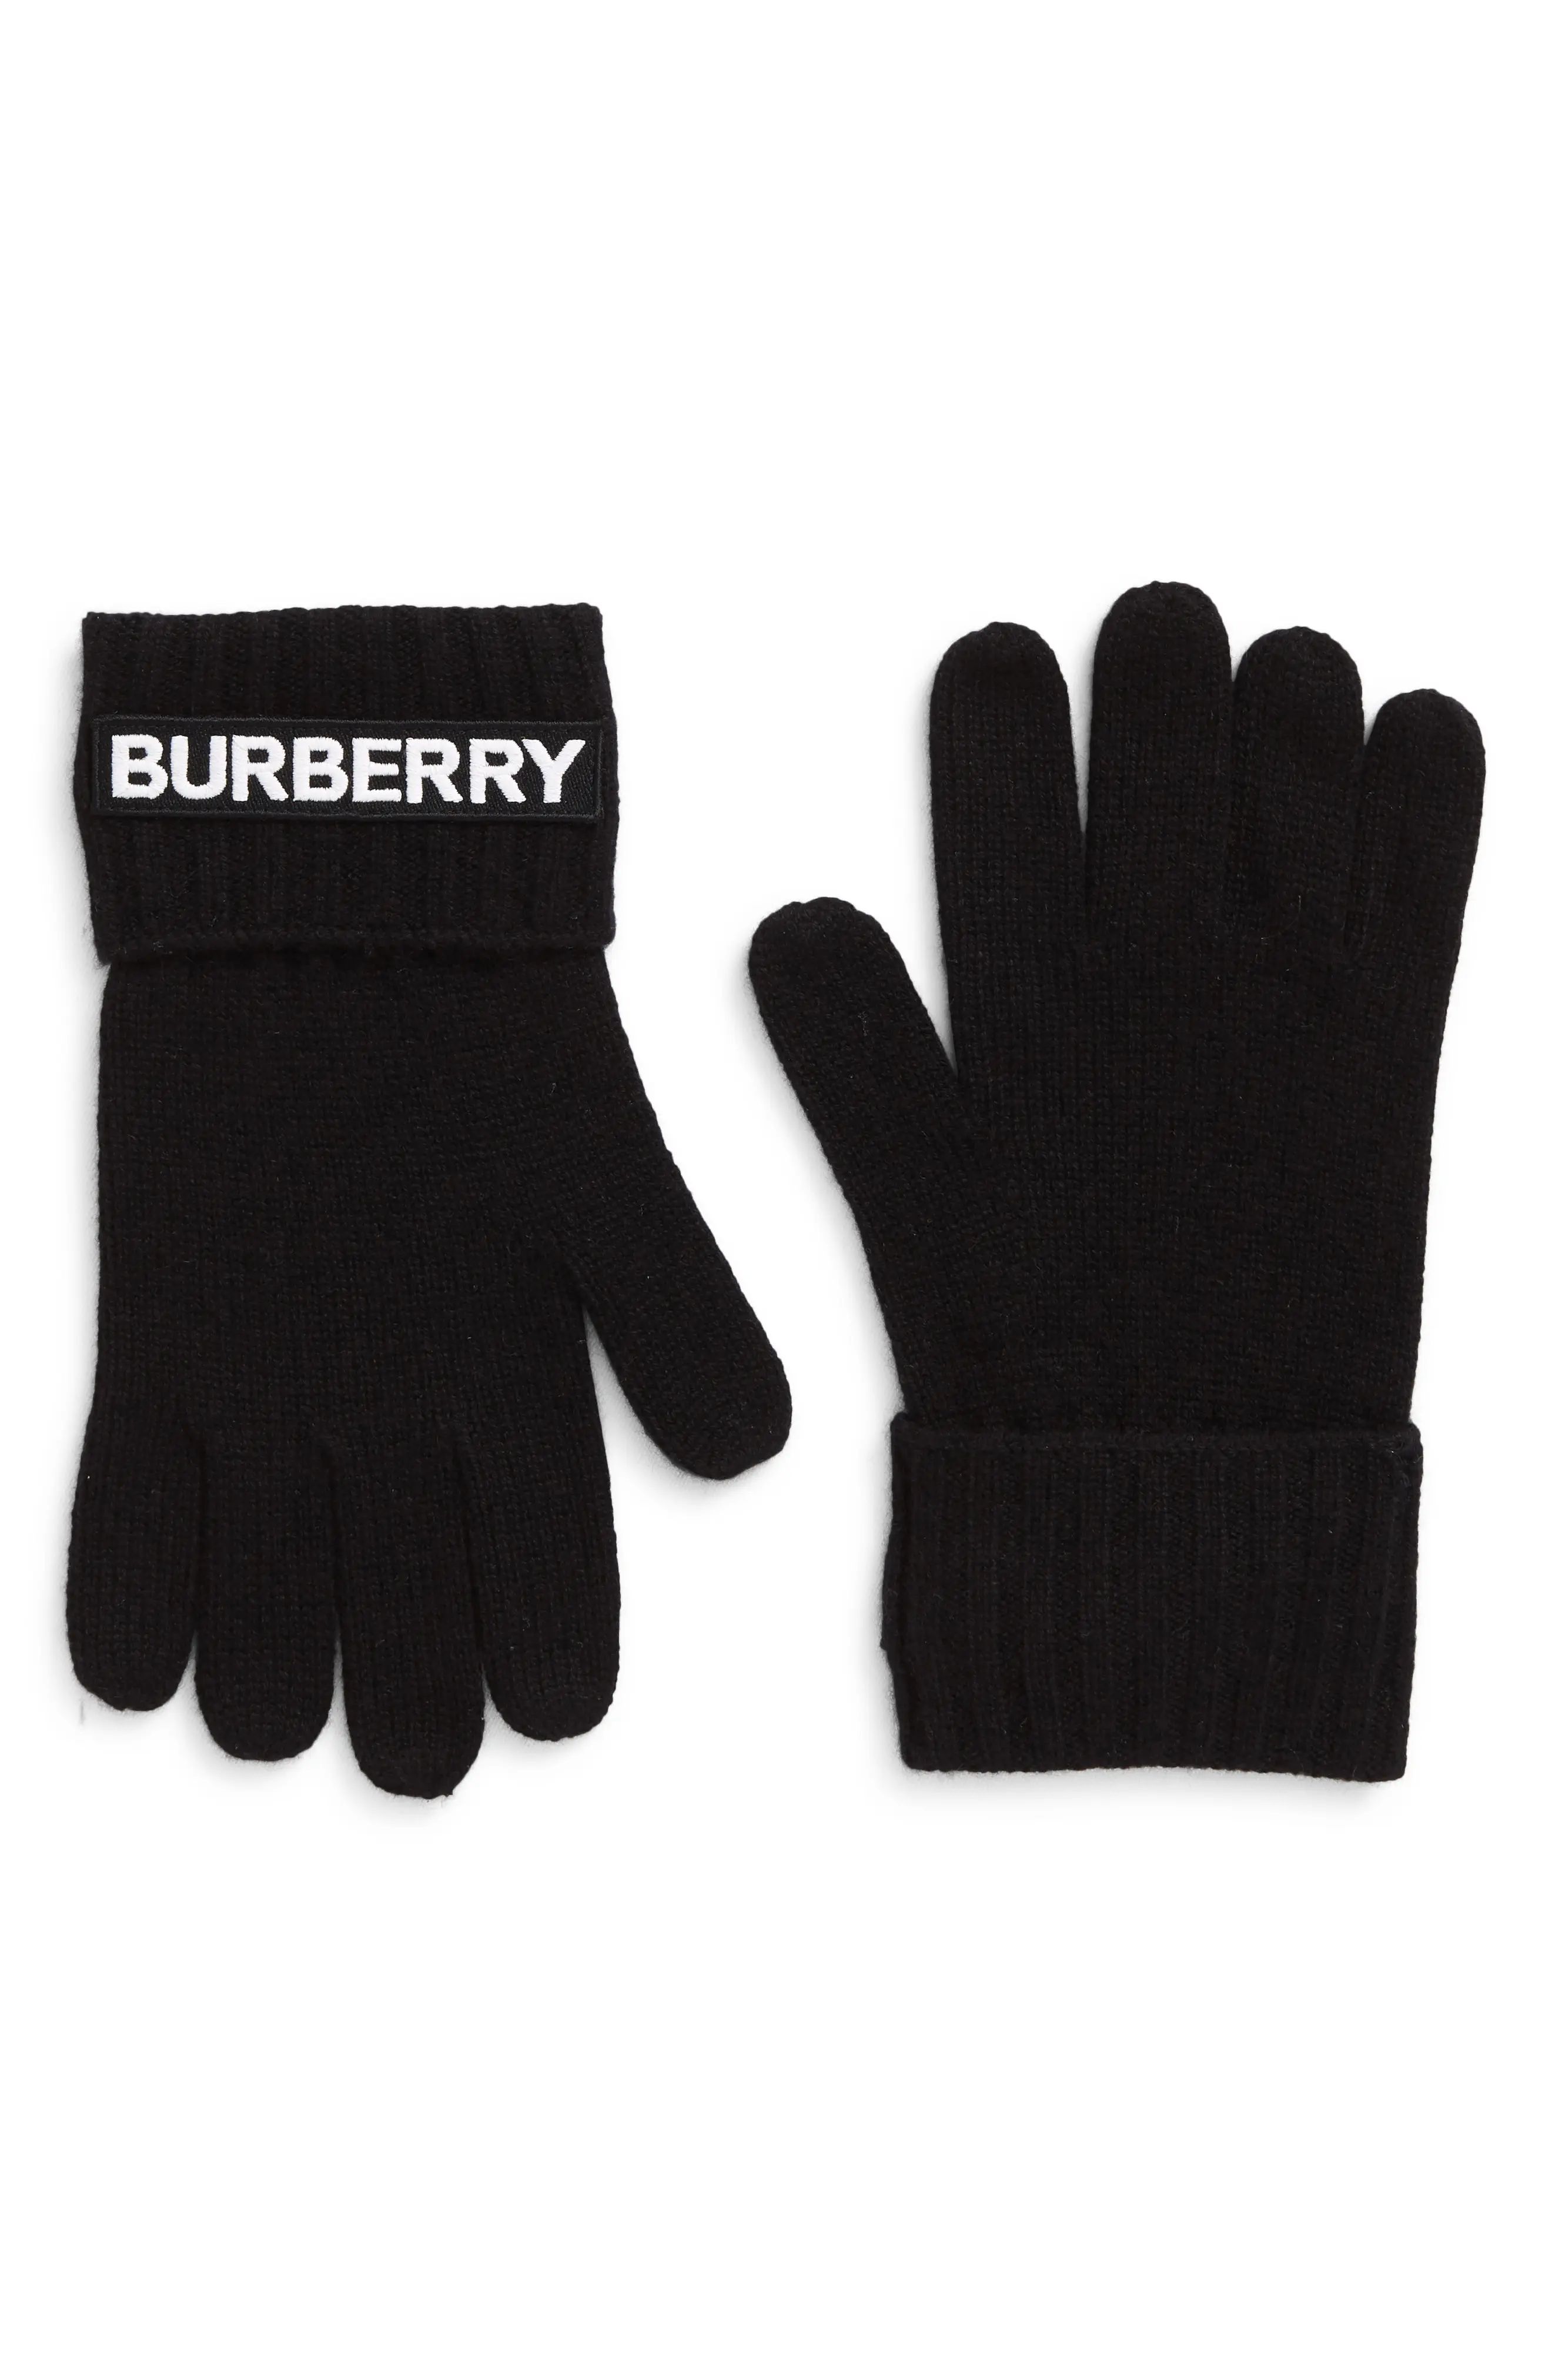 Burberry Kingdom Logo Applique Cashmere Gloves, Size Medium in Black at Nordstrom | Nordstrom